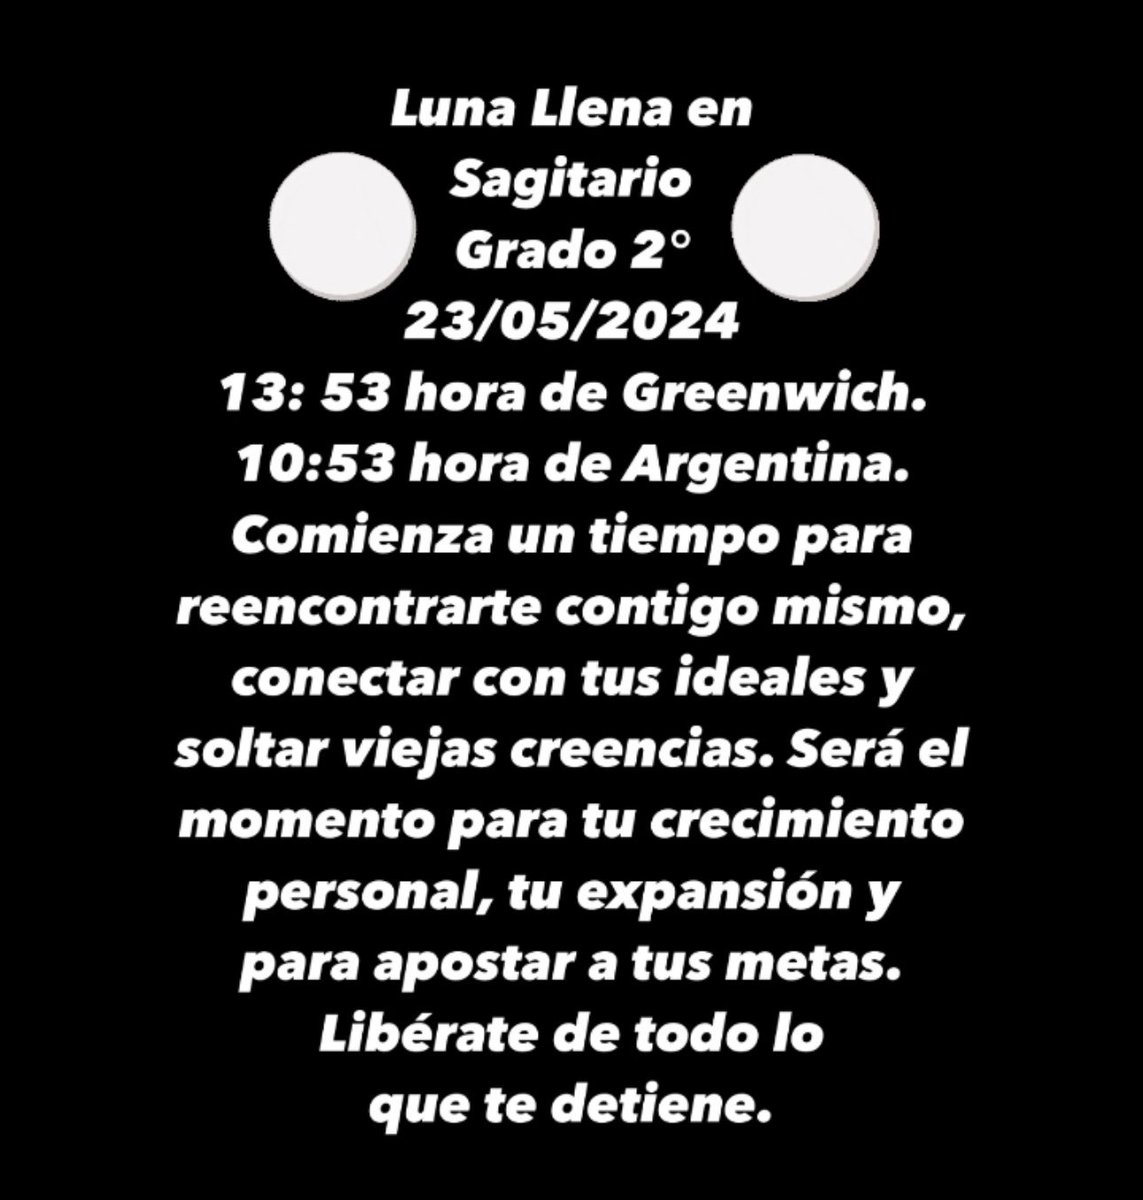 Luna llena en Sagitario 🌕♐️ 23/05/2024 #FullMoon #Astrología